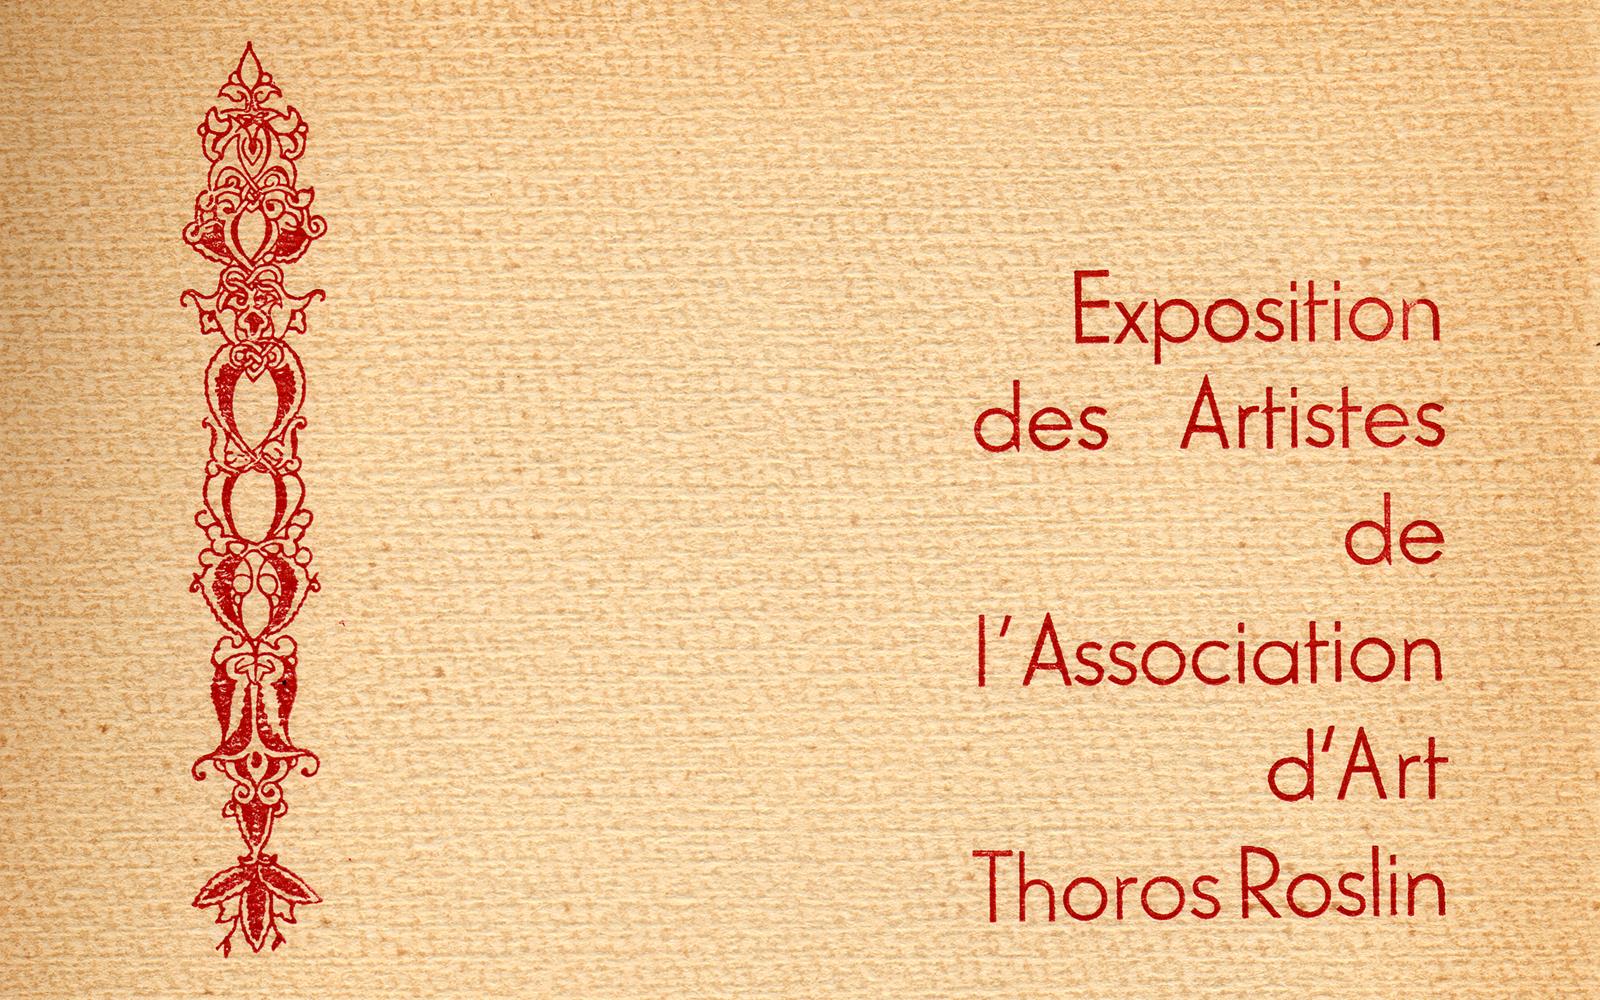 Exposition des Artistes de L'Association d'Art Thoros Roslin